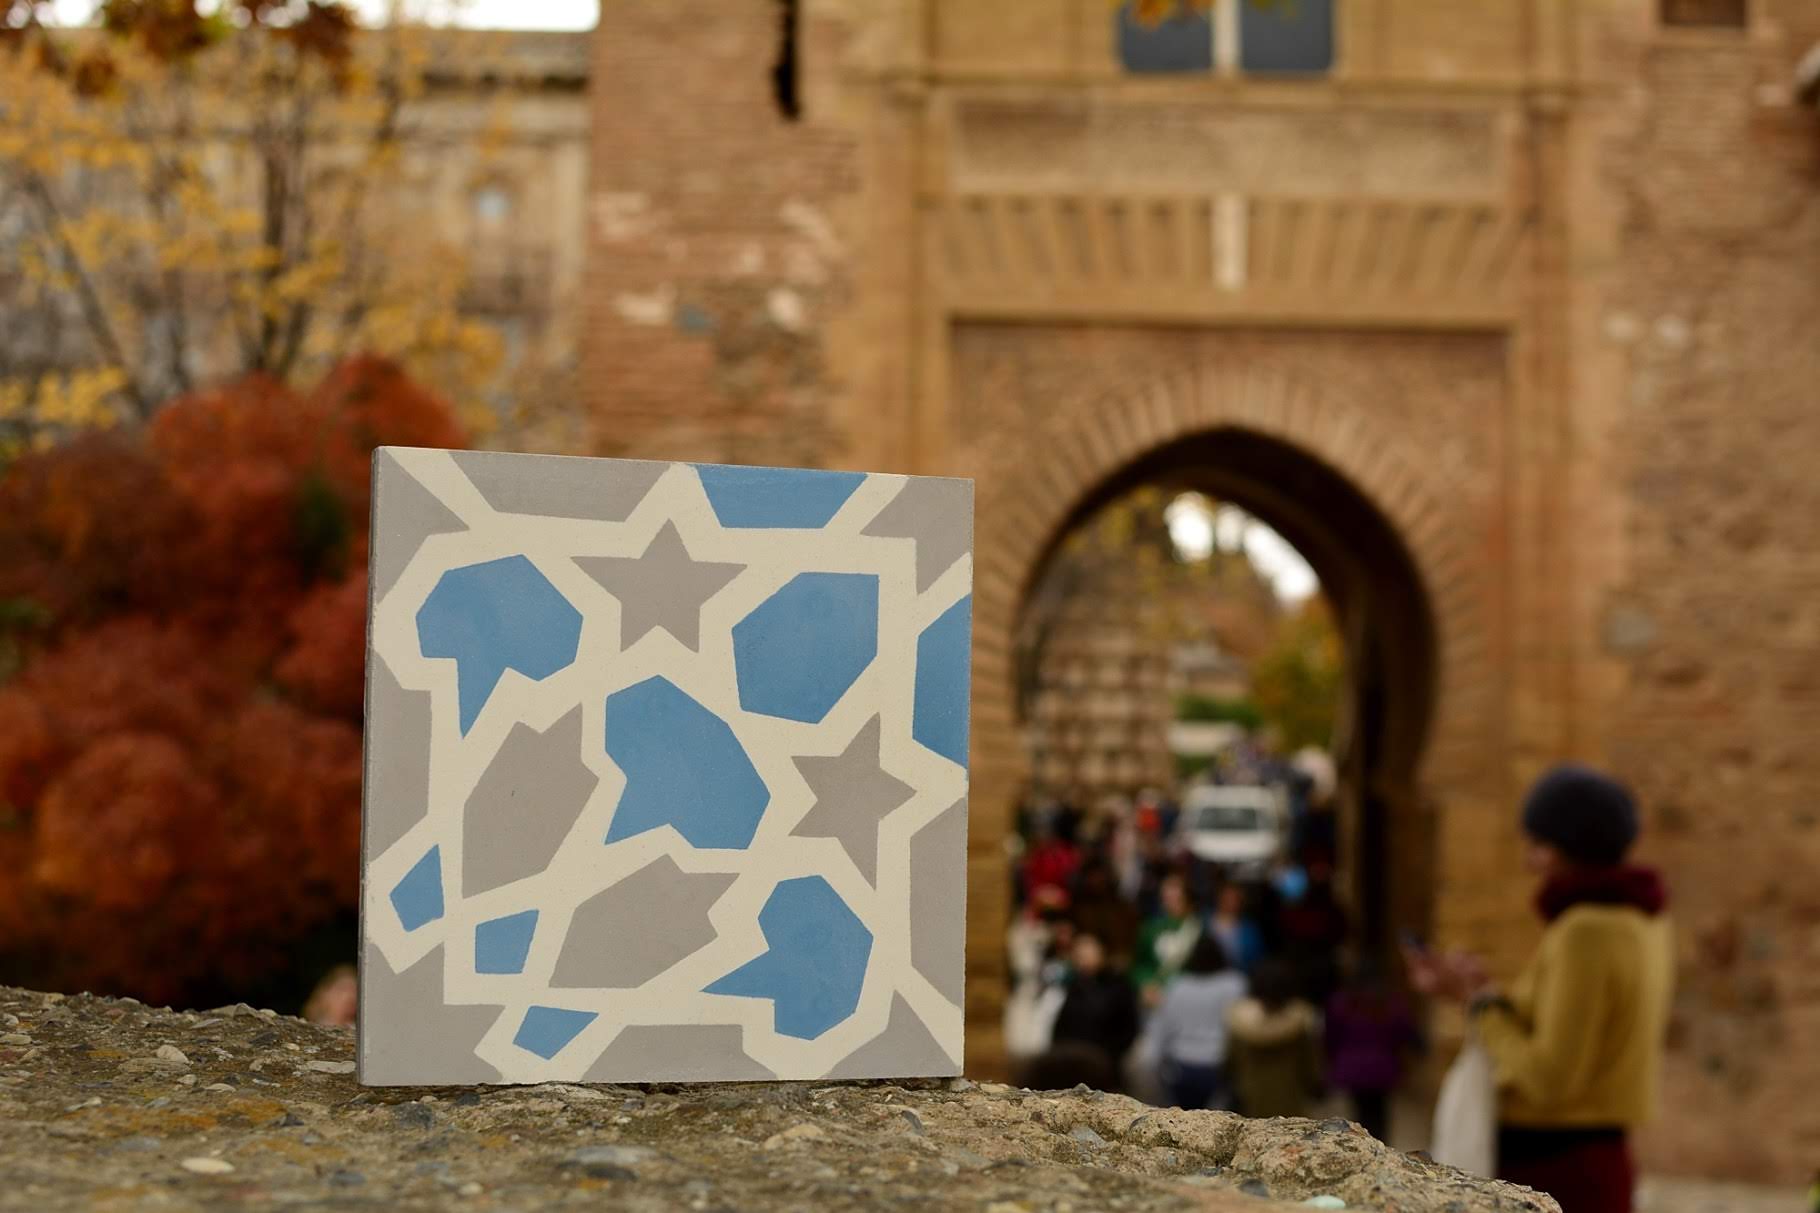 Qubba mayor azul y gris. Alhambra. Mosaicos Lamardelejos